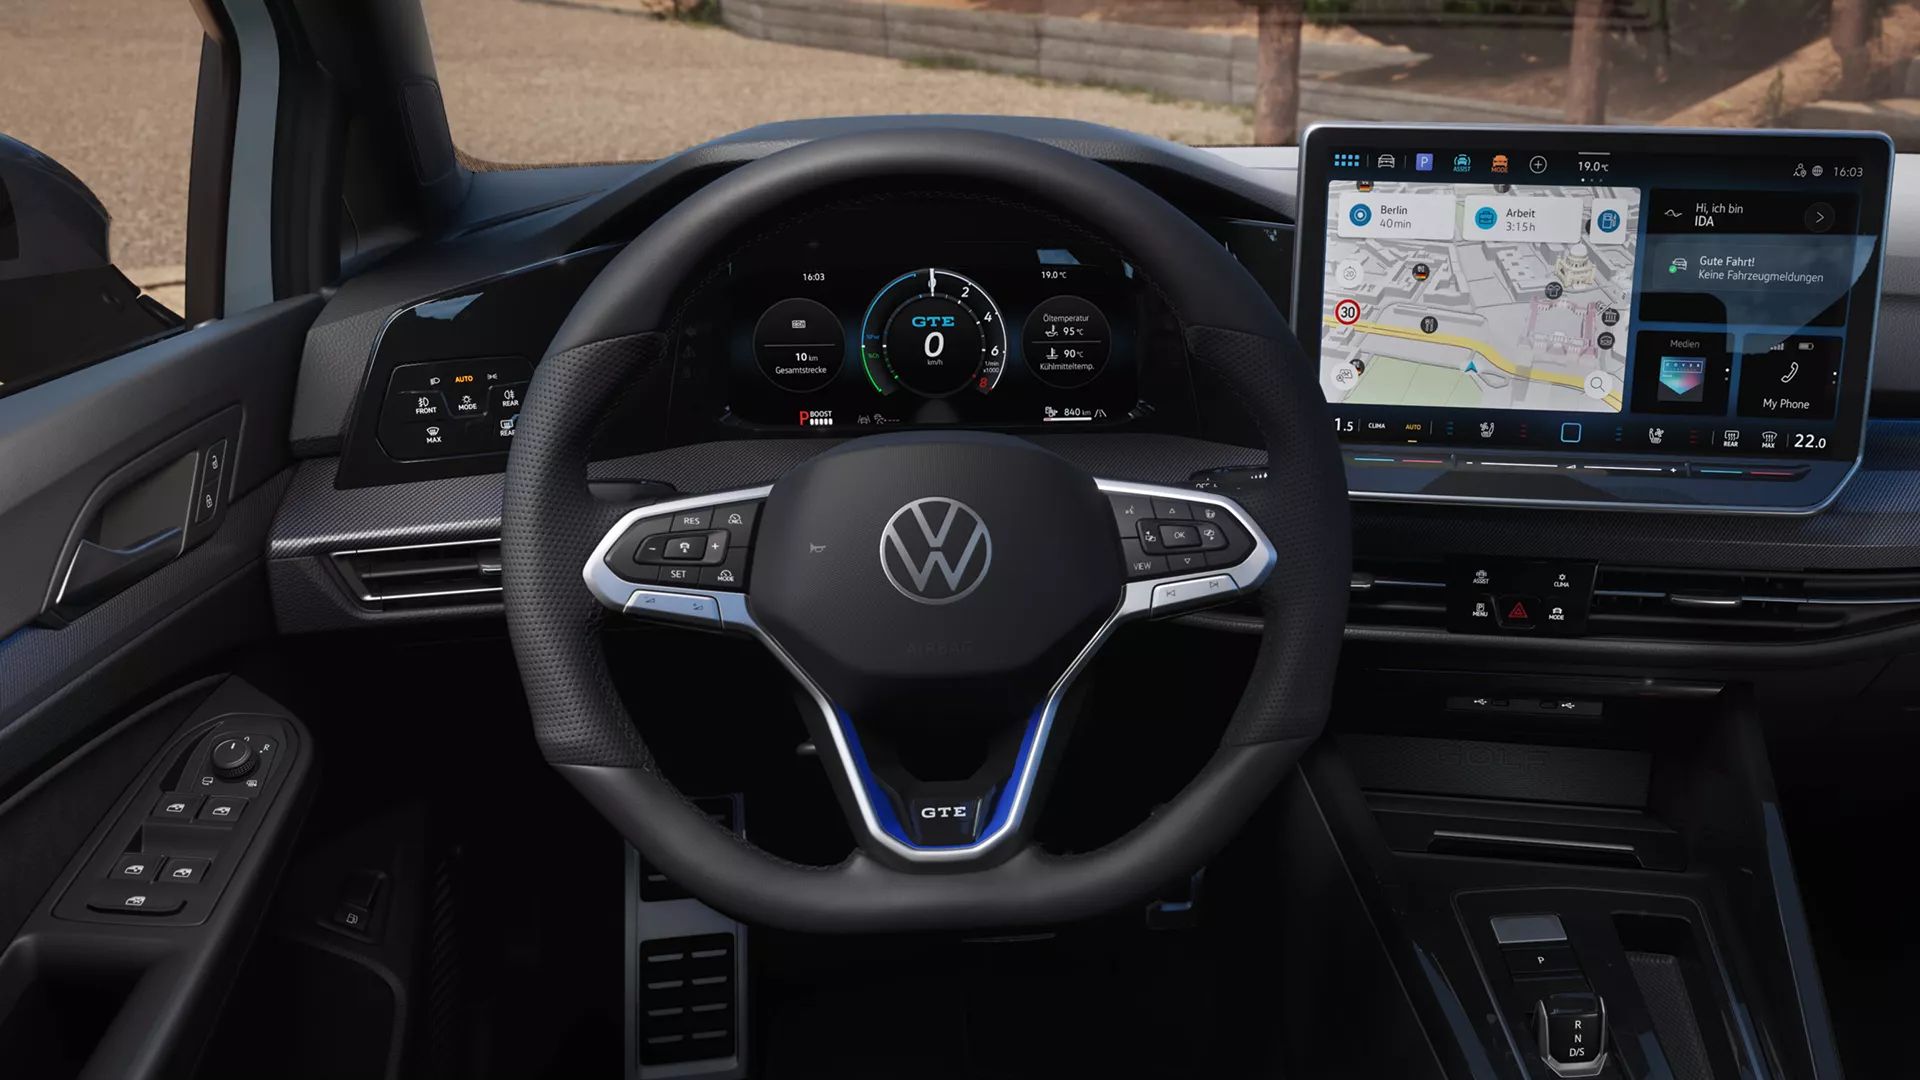 Lenkrad, Digital Cockpit und Infotainment des VW Golf GTE